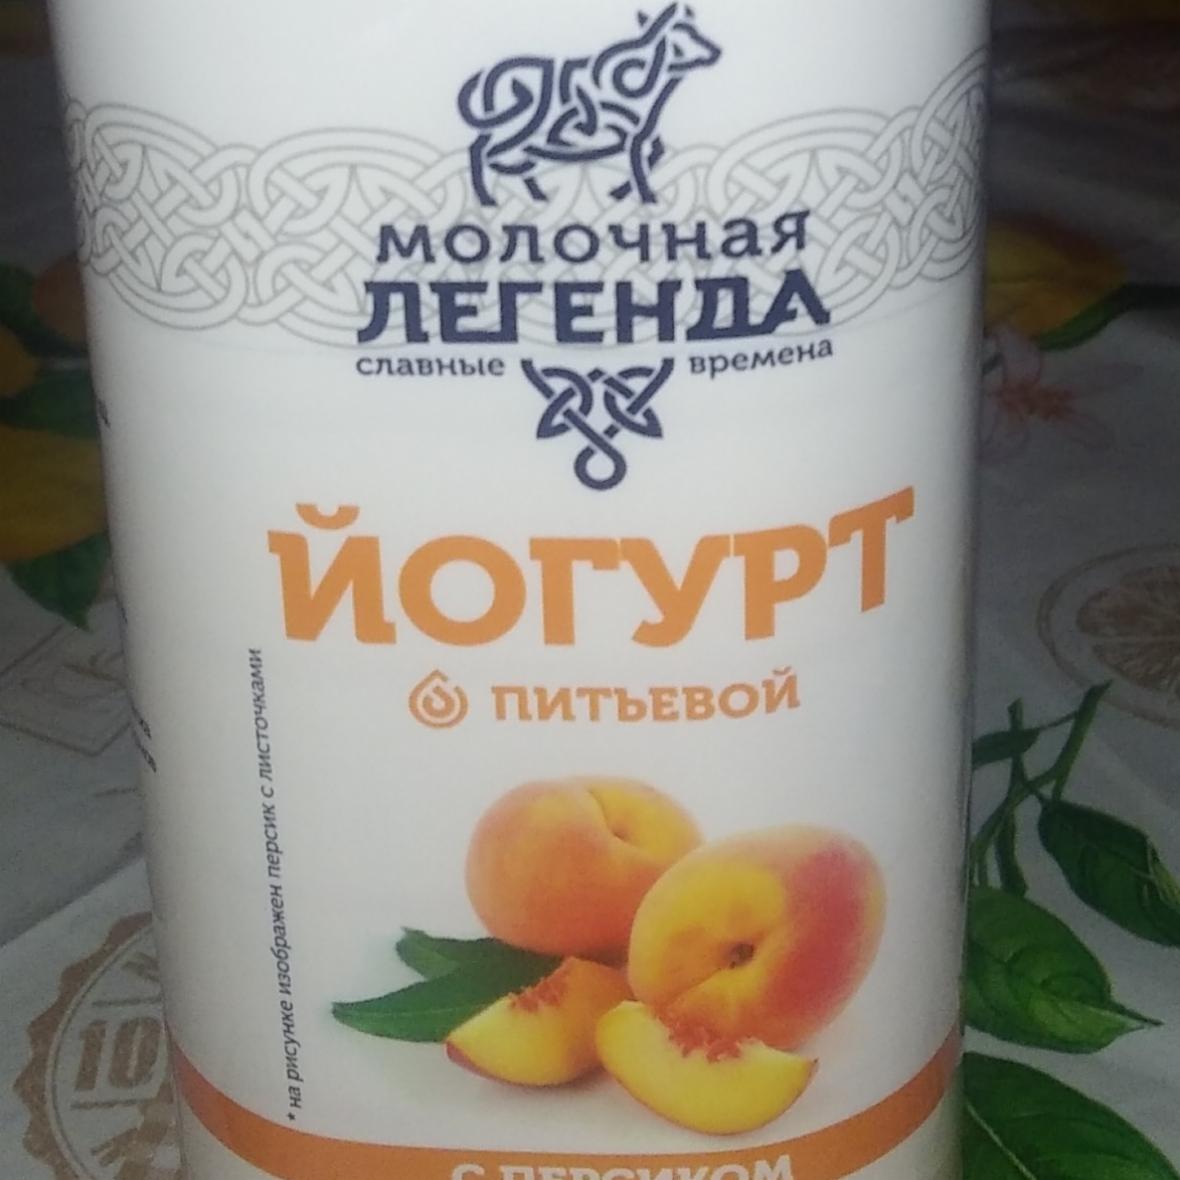 Фото - Йогурт питьевой с персиком Молочная легенда